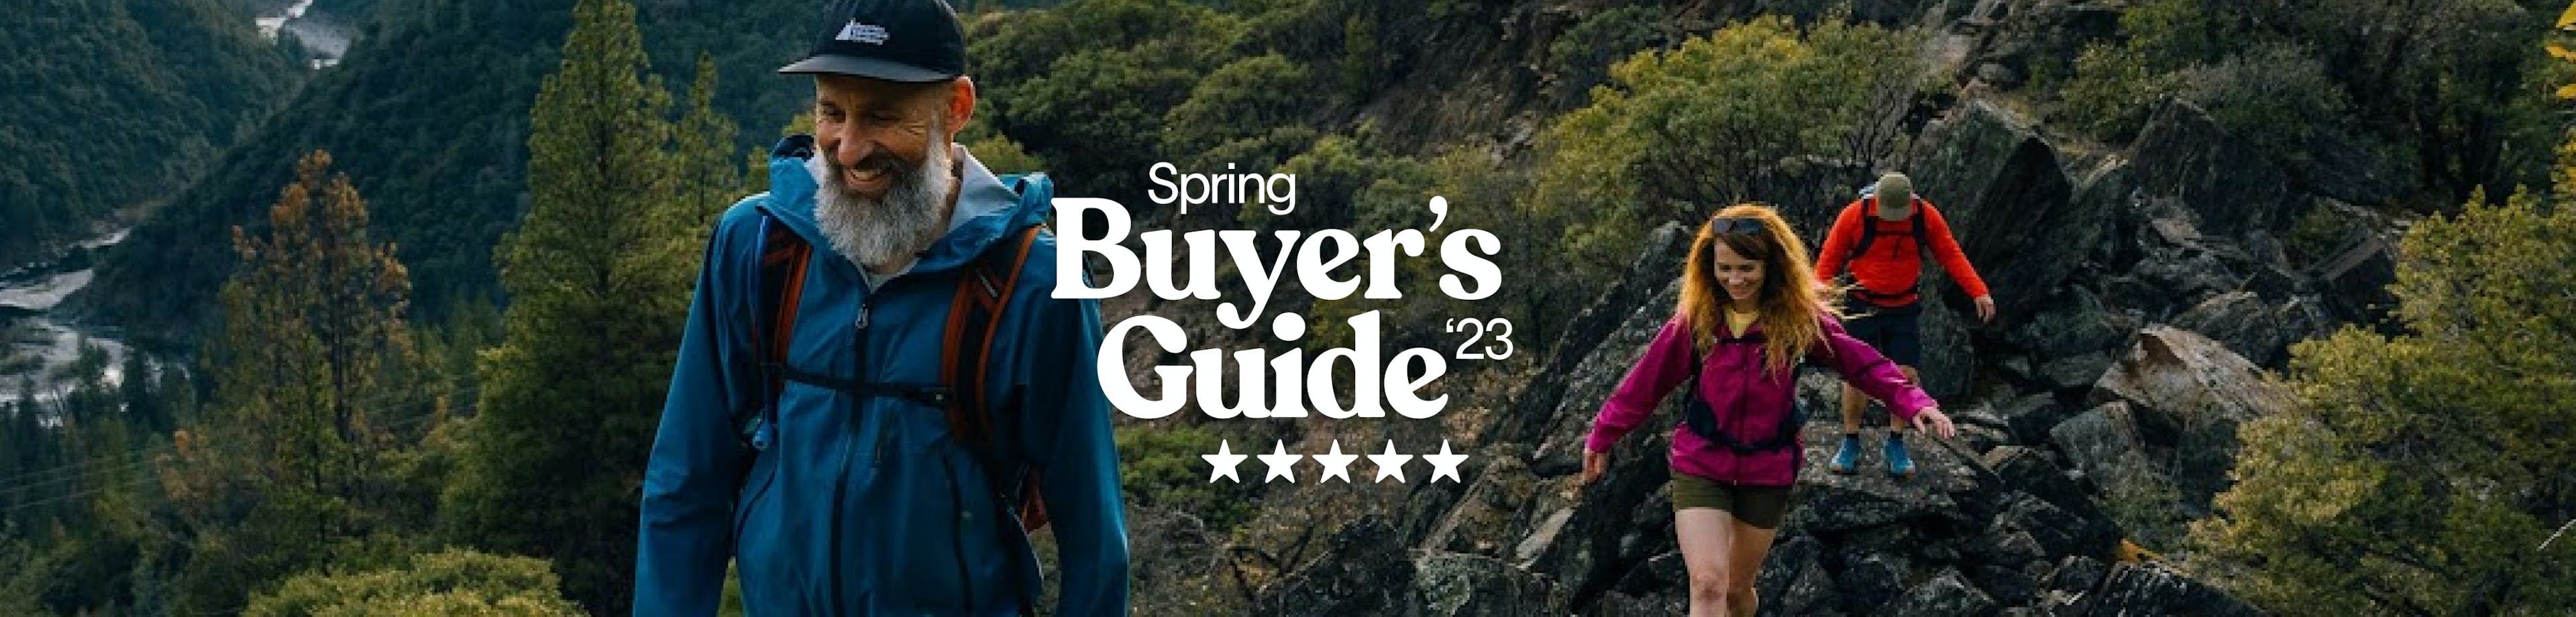 Buyer’s Guide: Men’s Outdoor Clothing